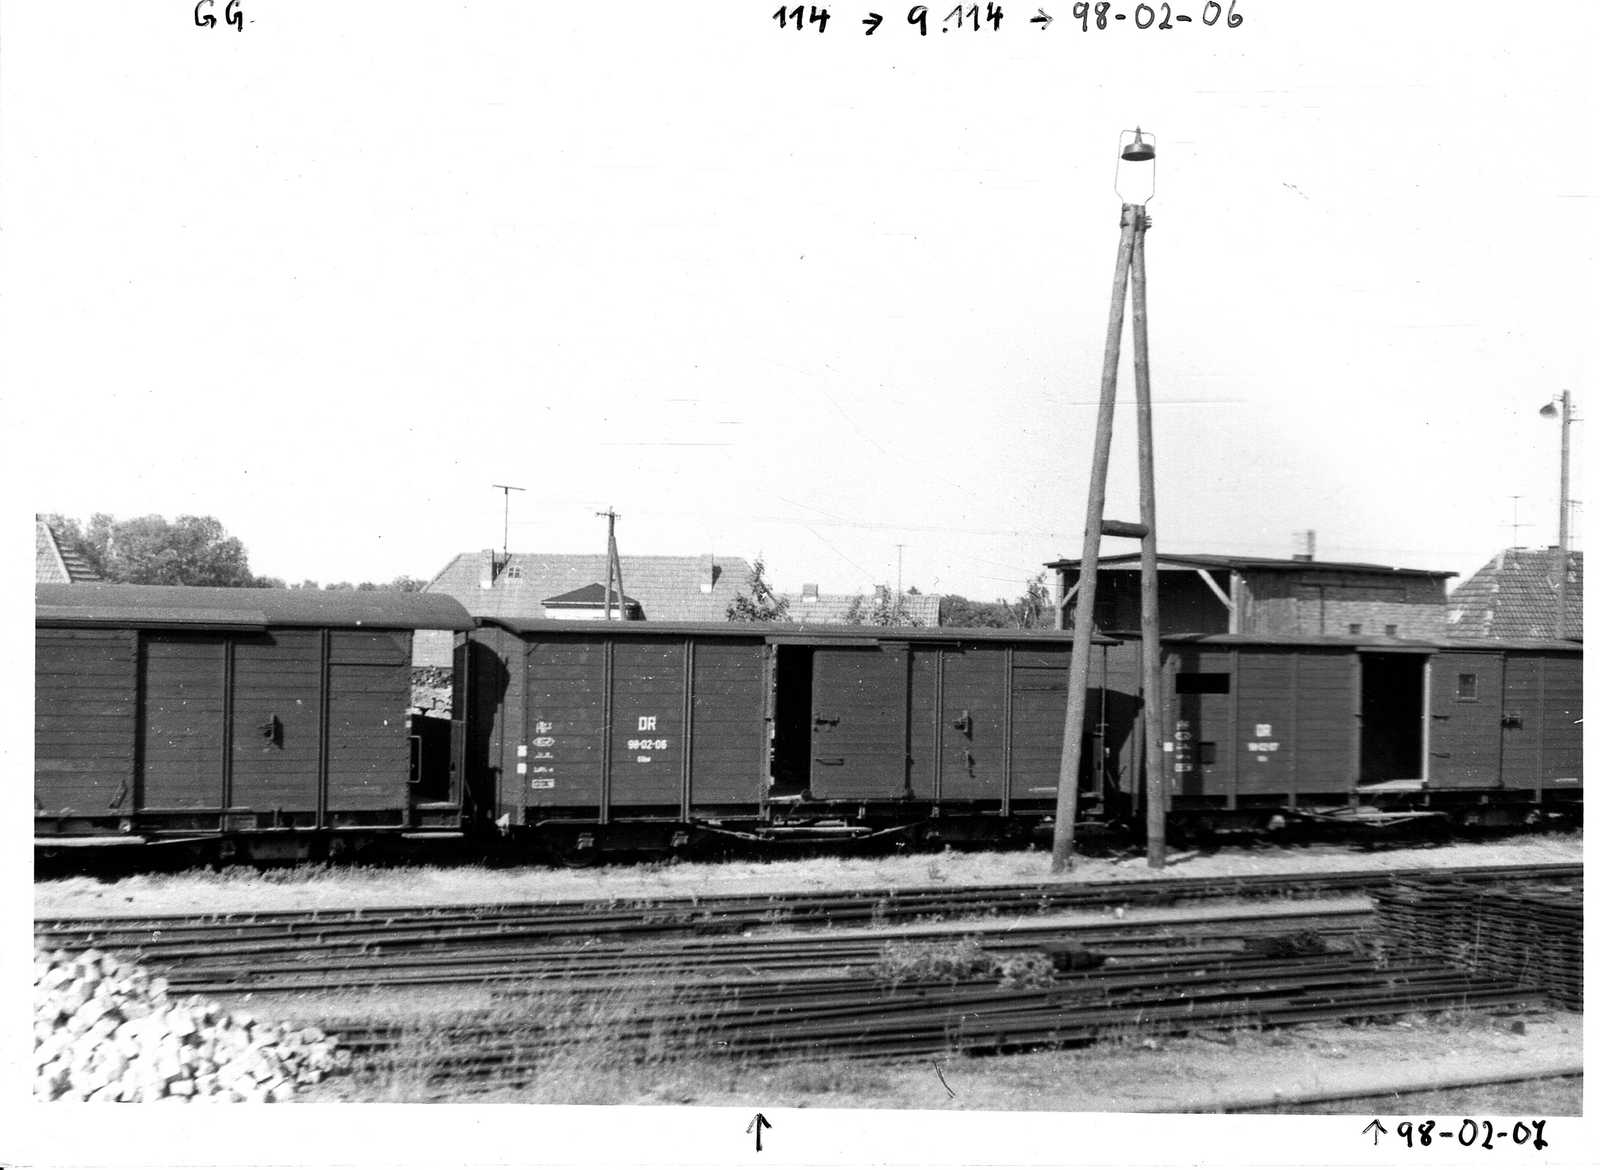 Günter Meyer fotografierte am 21. Juni 1962 in Bad Doberan stehende Molli-Güterwagen. Der für 15 t Ladegewicht zugelassene 99-02-06 hätte mit dem Gattungszeichen GG beschriftet sein müssen, trug aber die Buchstaben GGw.